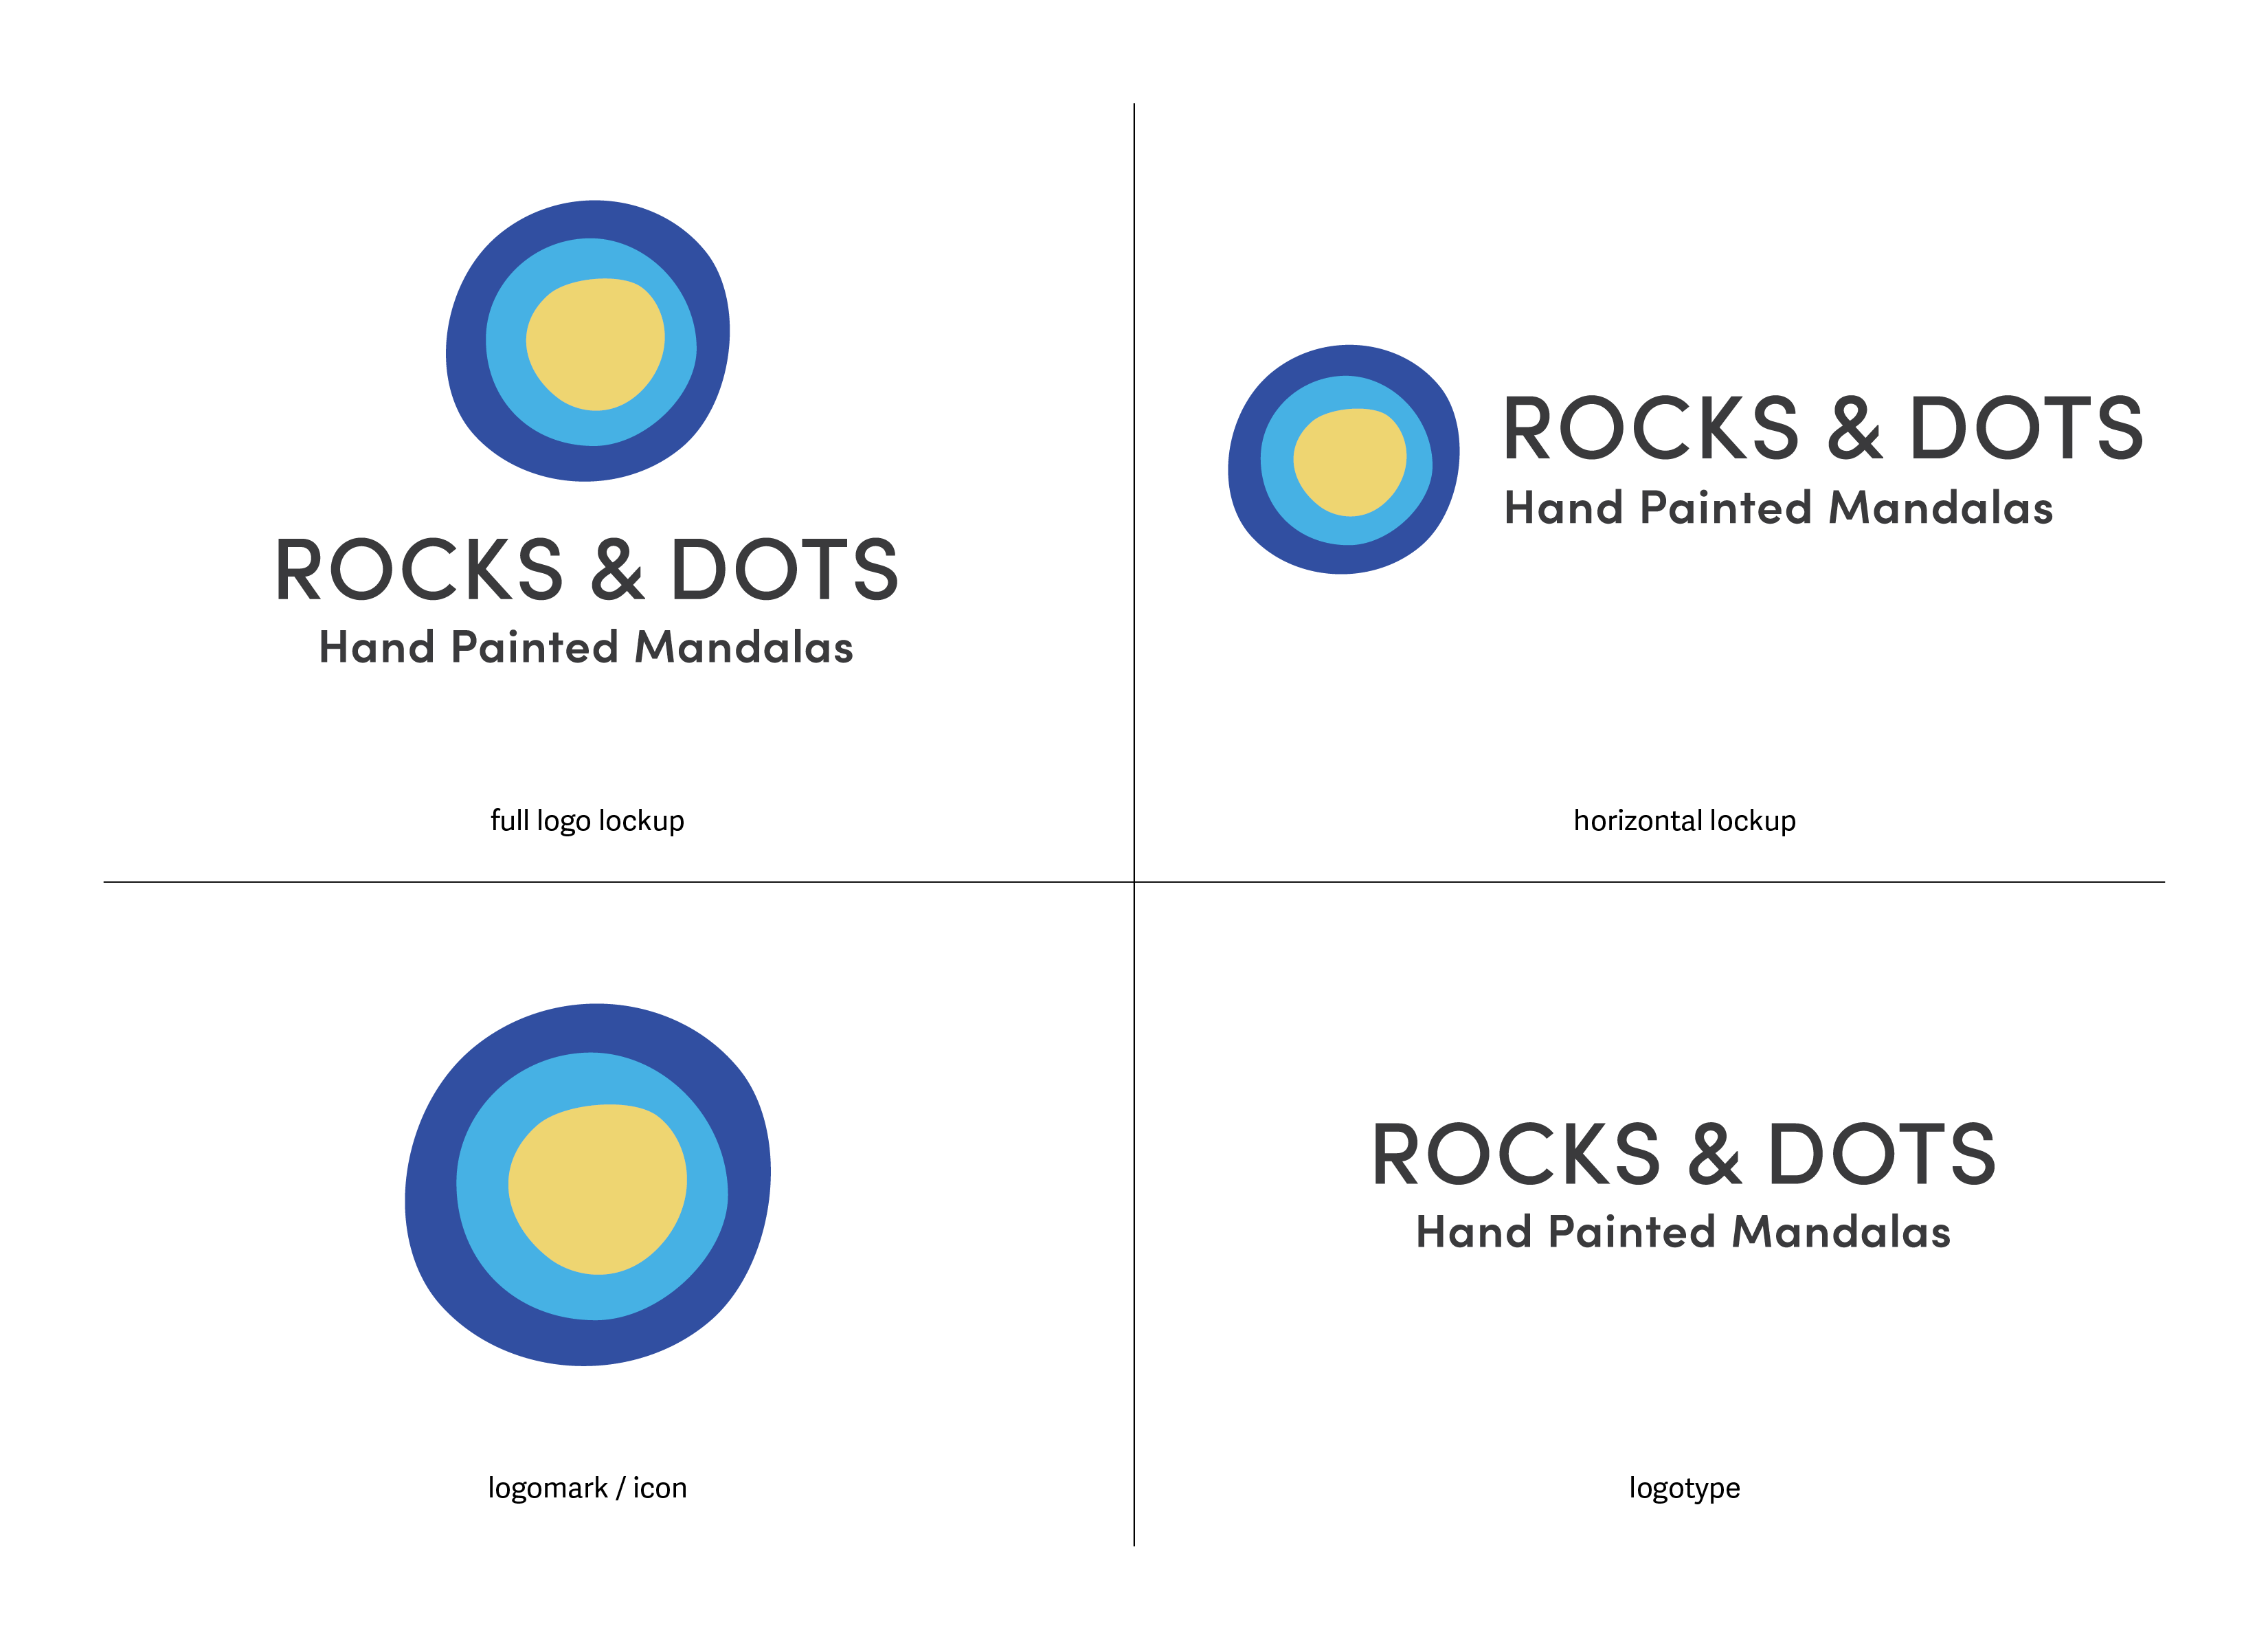 Rocks & Dots Final Logo_All Lockups